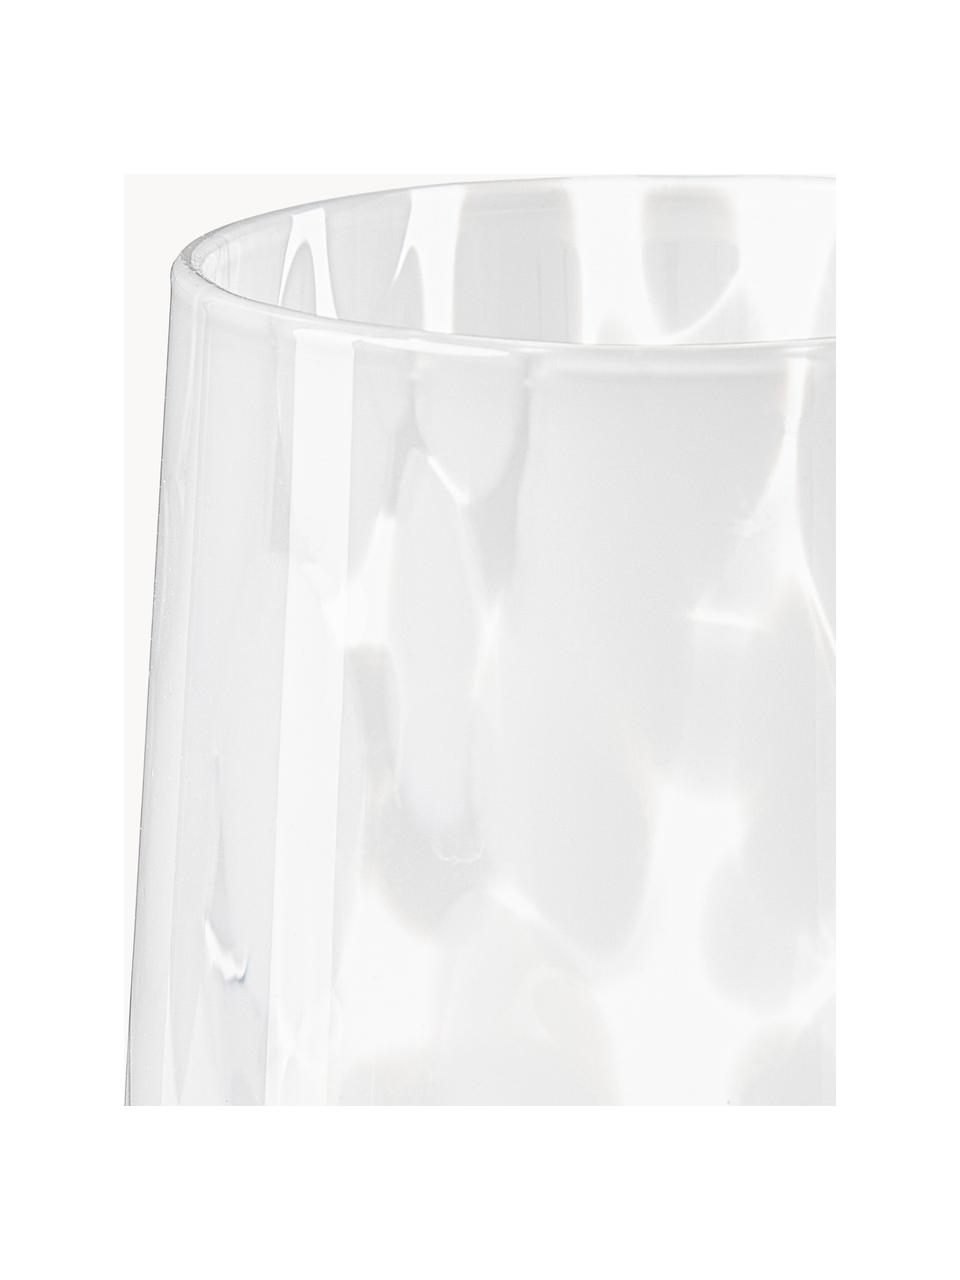 Ręcznie wykonana szklanka Oakley, 4 szt., Szkło, Biały, transparentny, Ø 9 x W 10 cm, 370 ml